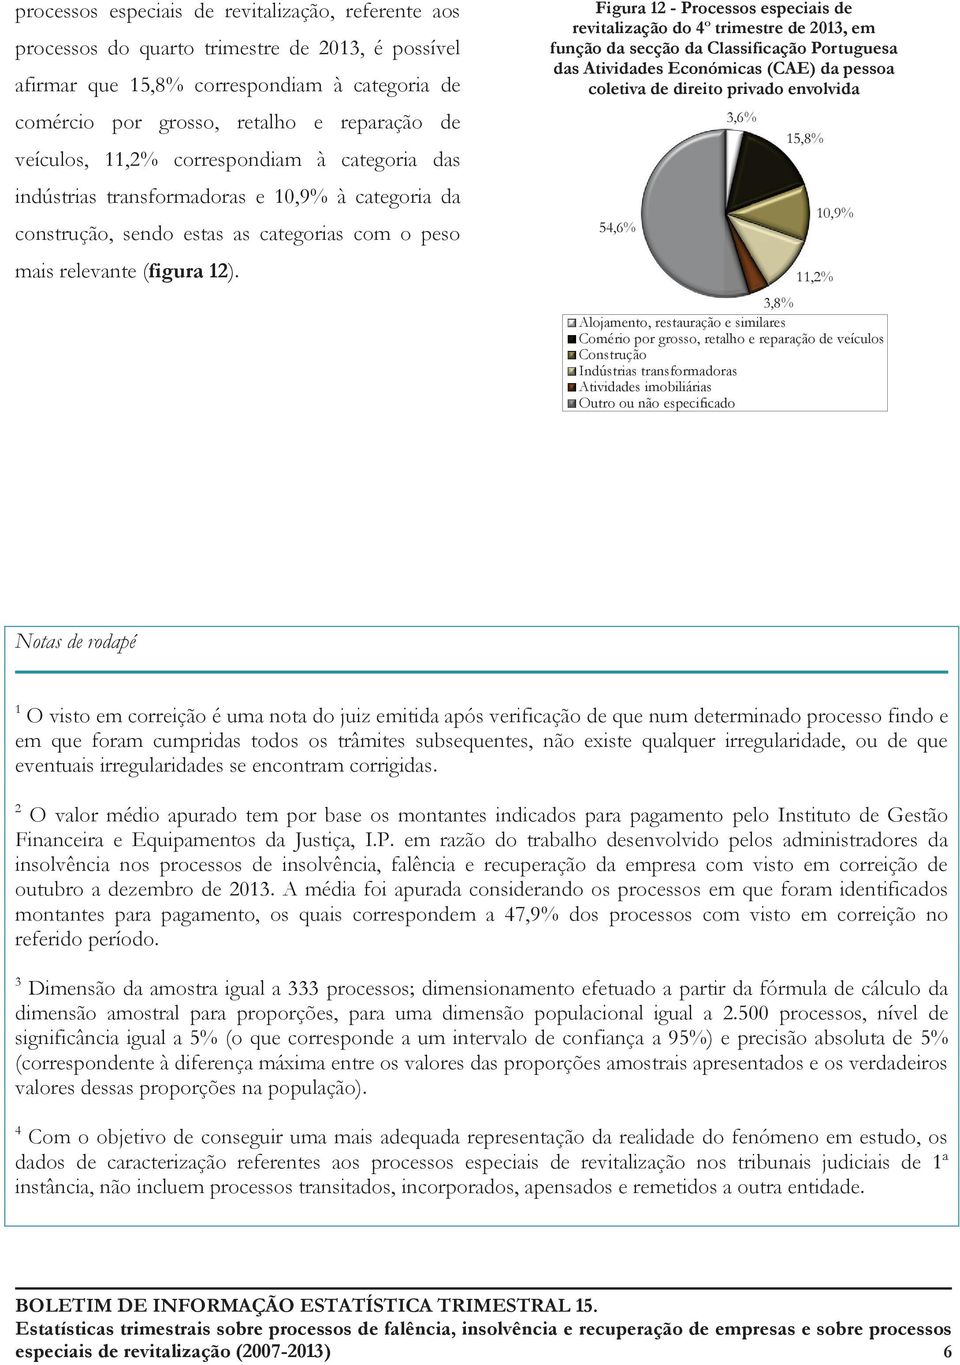 Figura 12 - Processos especiais de revitalização do 4º trimestre de 2013, em função da secção da Classificação Portuguesa das Atividades Económicas (CAE) da pessoa coletiva de direito privado